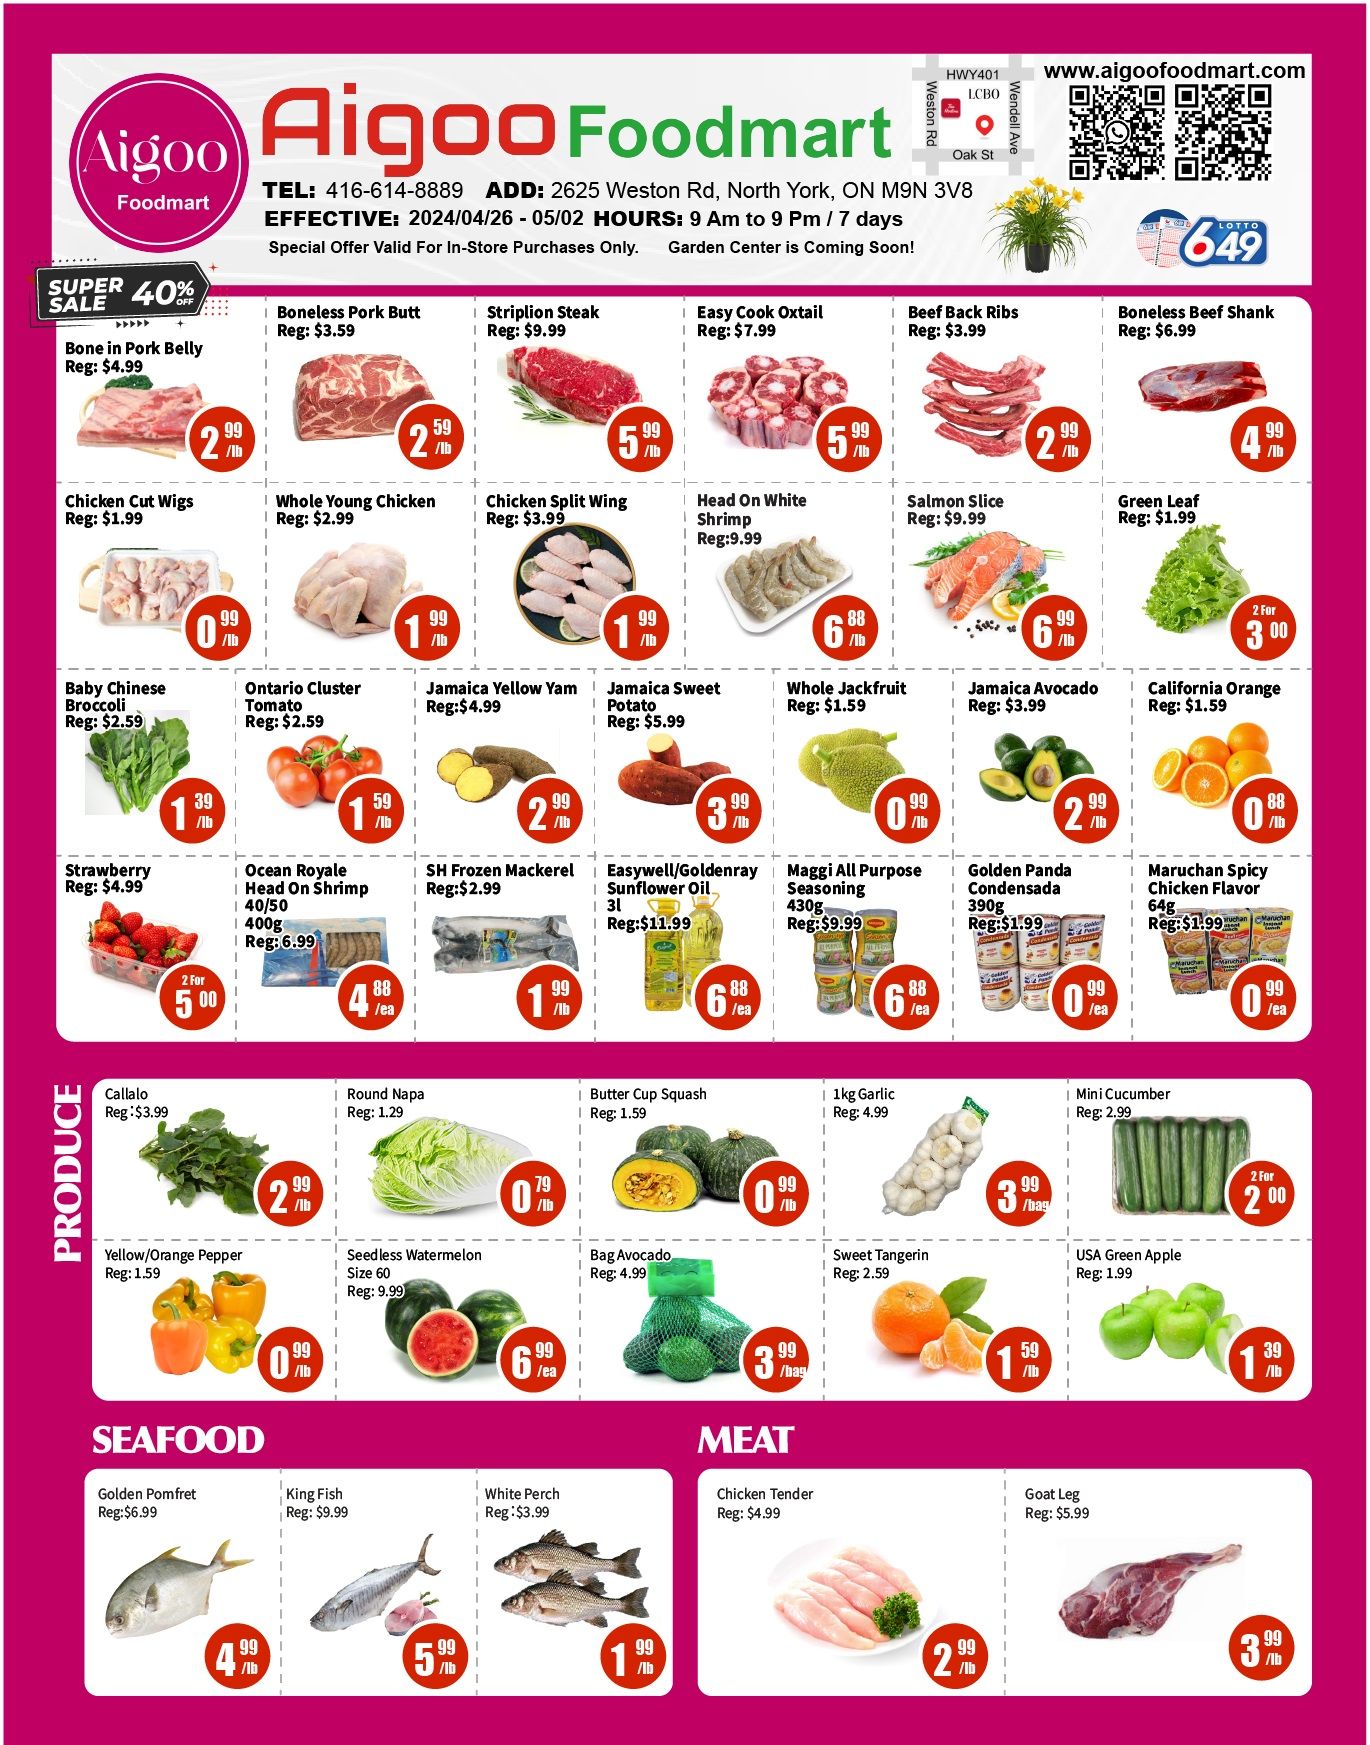 Aigoo Foodmart - Weekly Flyer Specials